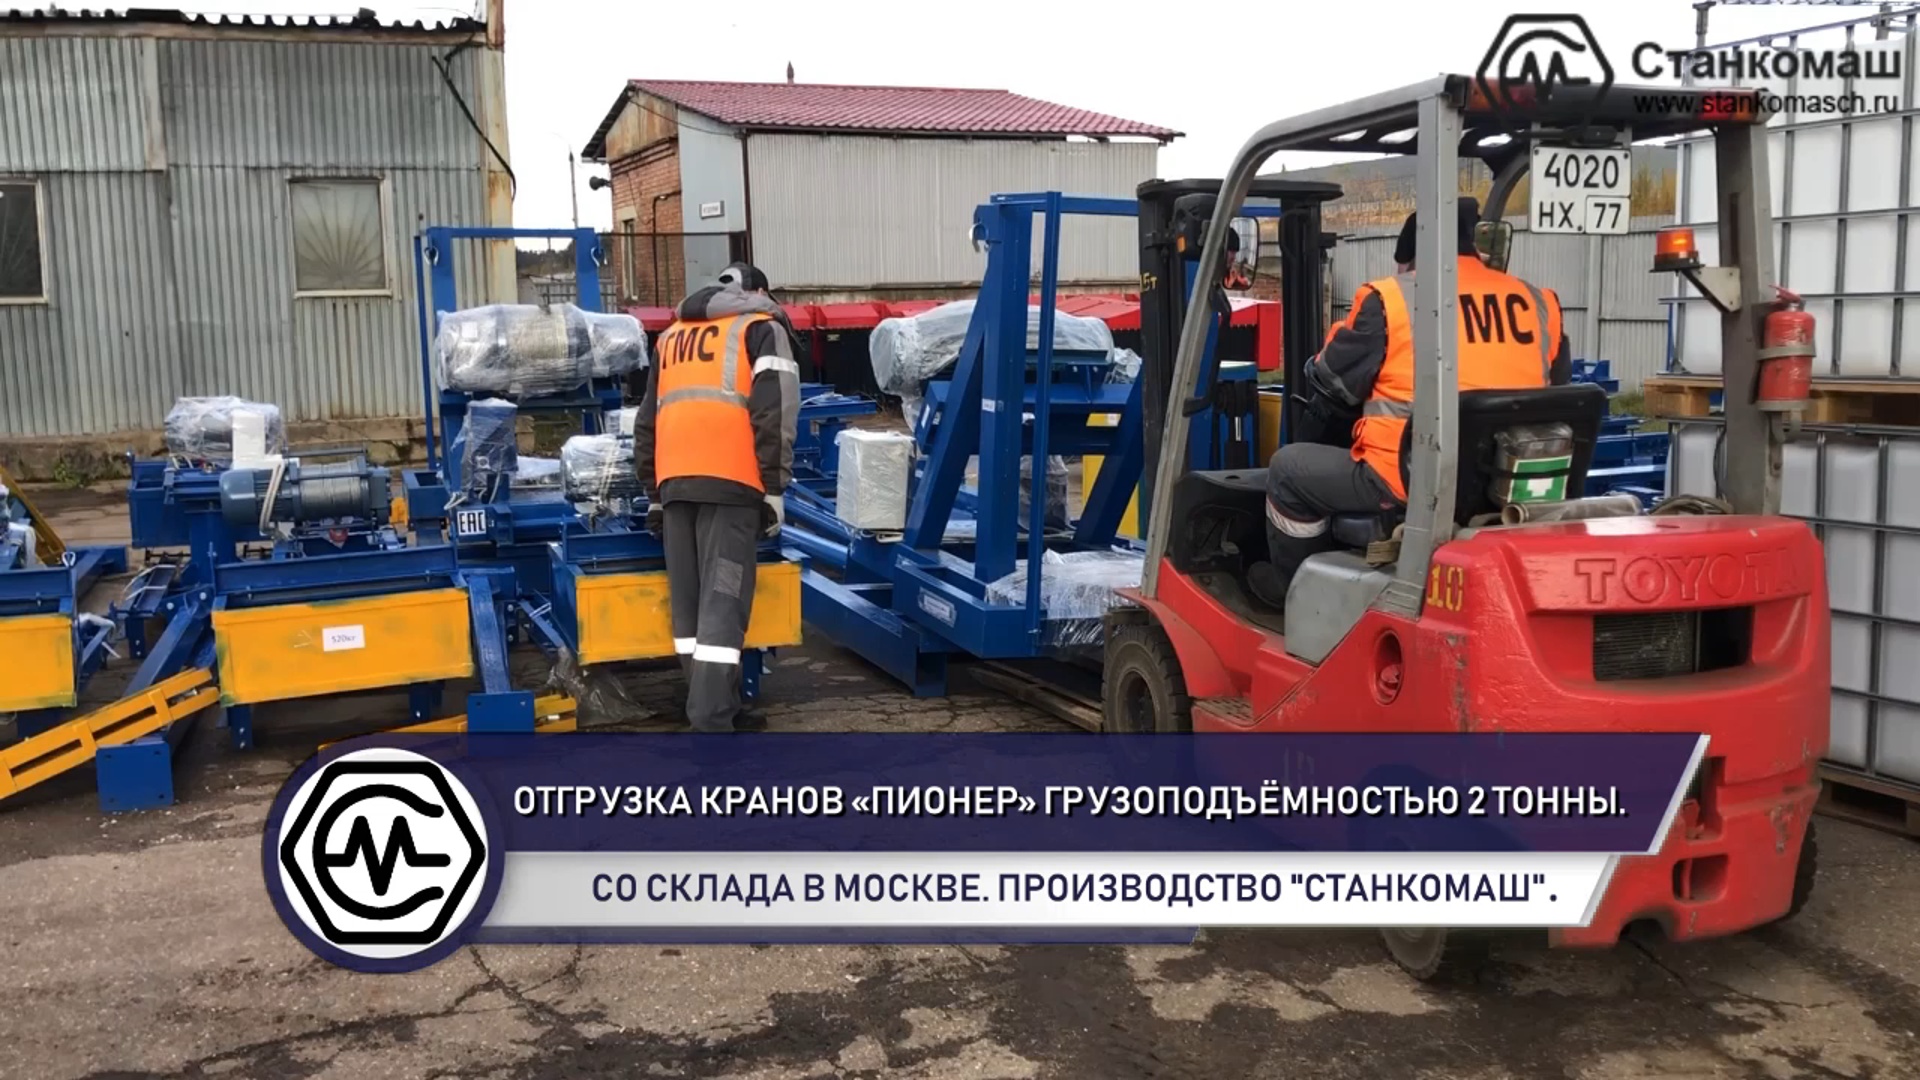 Отгрузка кранов «Пионер» грузоподъёмностью 2 тонны со склада в Москве. Производитель – Станкомаш.